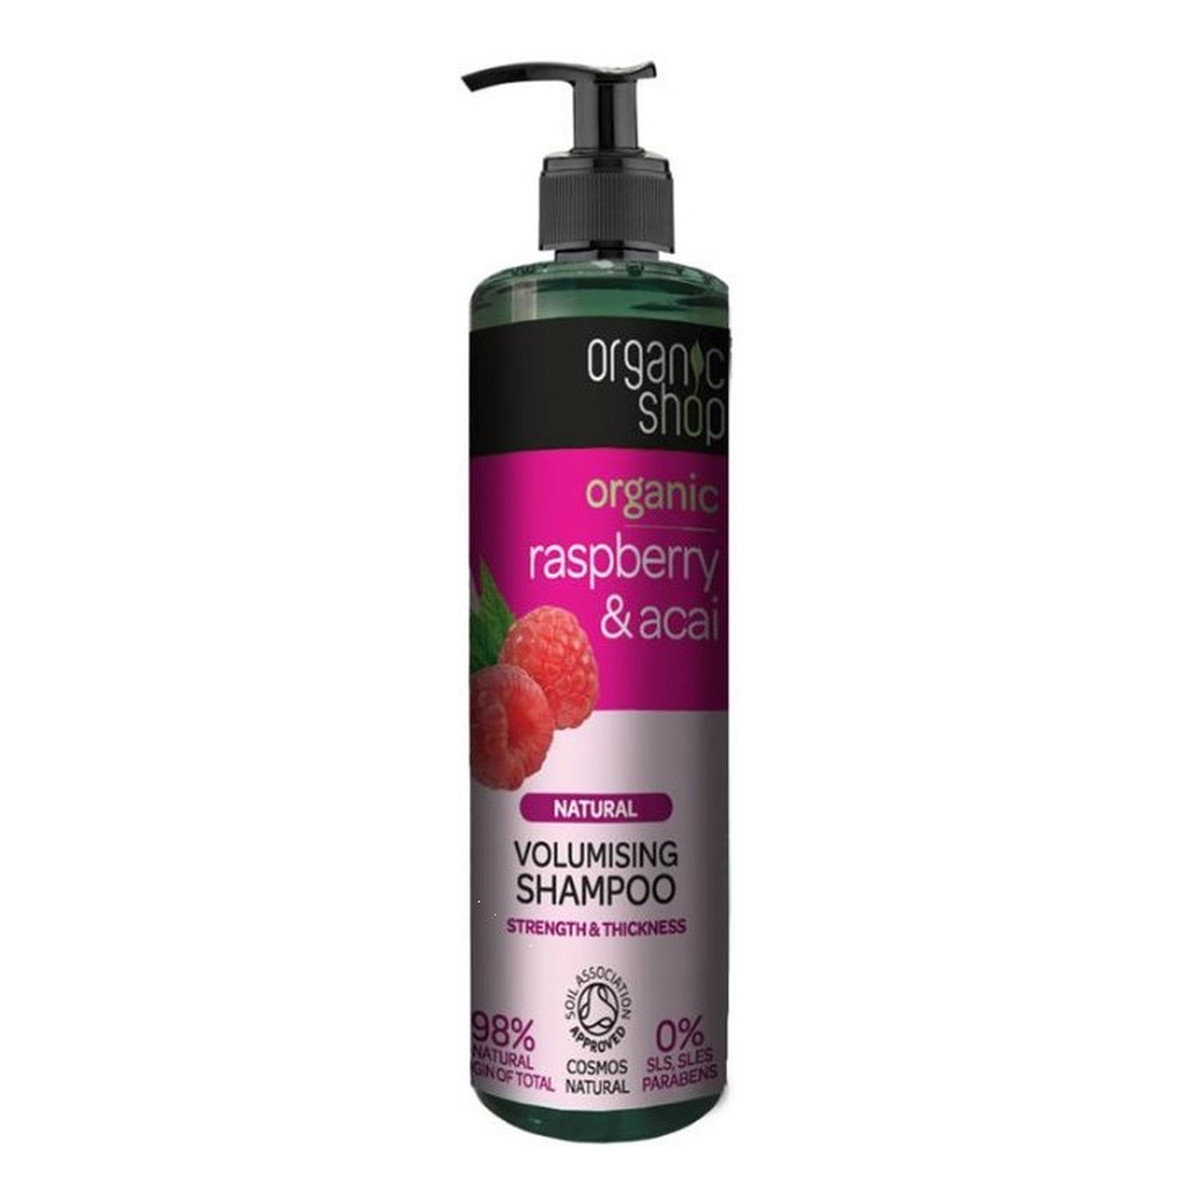 organic shop szampon zwiększający objętość organiczna malina & acai wizaż